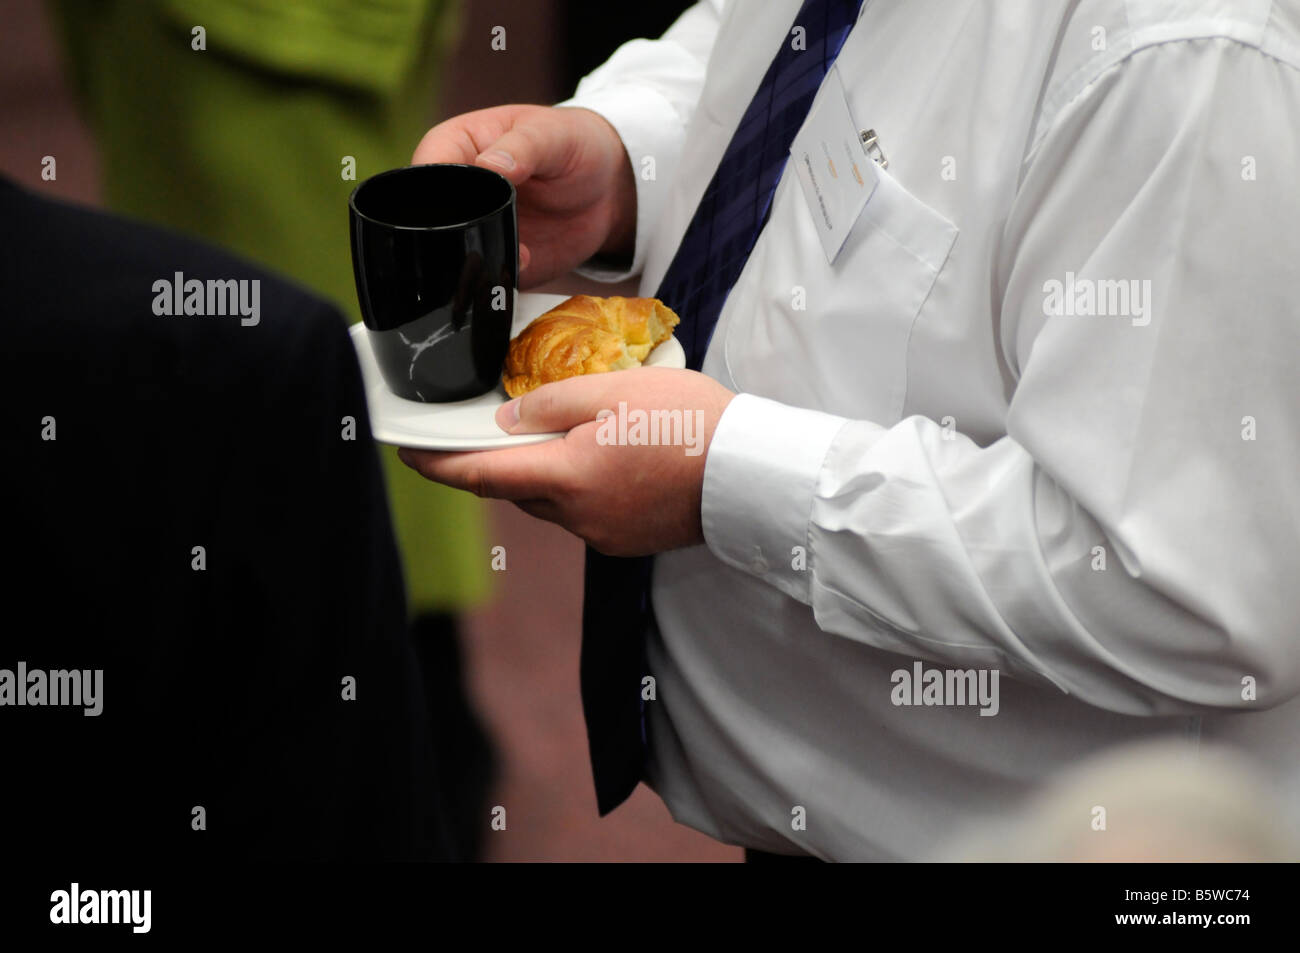 Image libre de photographie de l'excès de business man manger un repas malsains lors d'une réunion dans un hôtel à Londres UK Banque D'Images